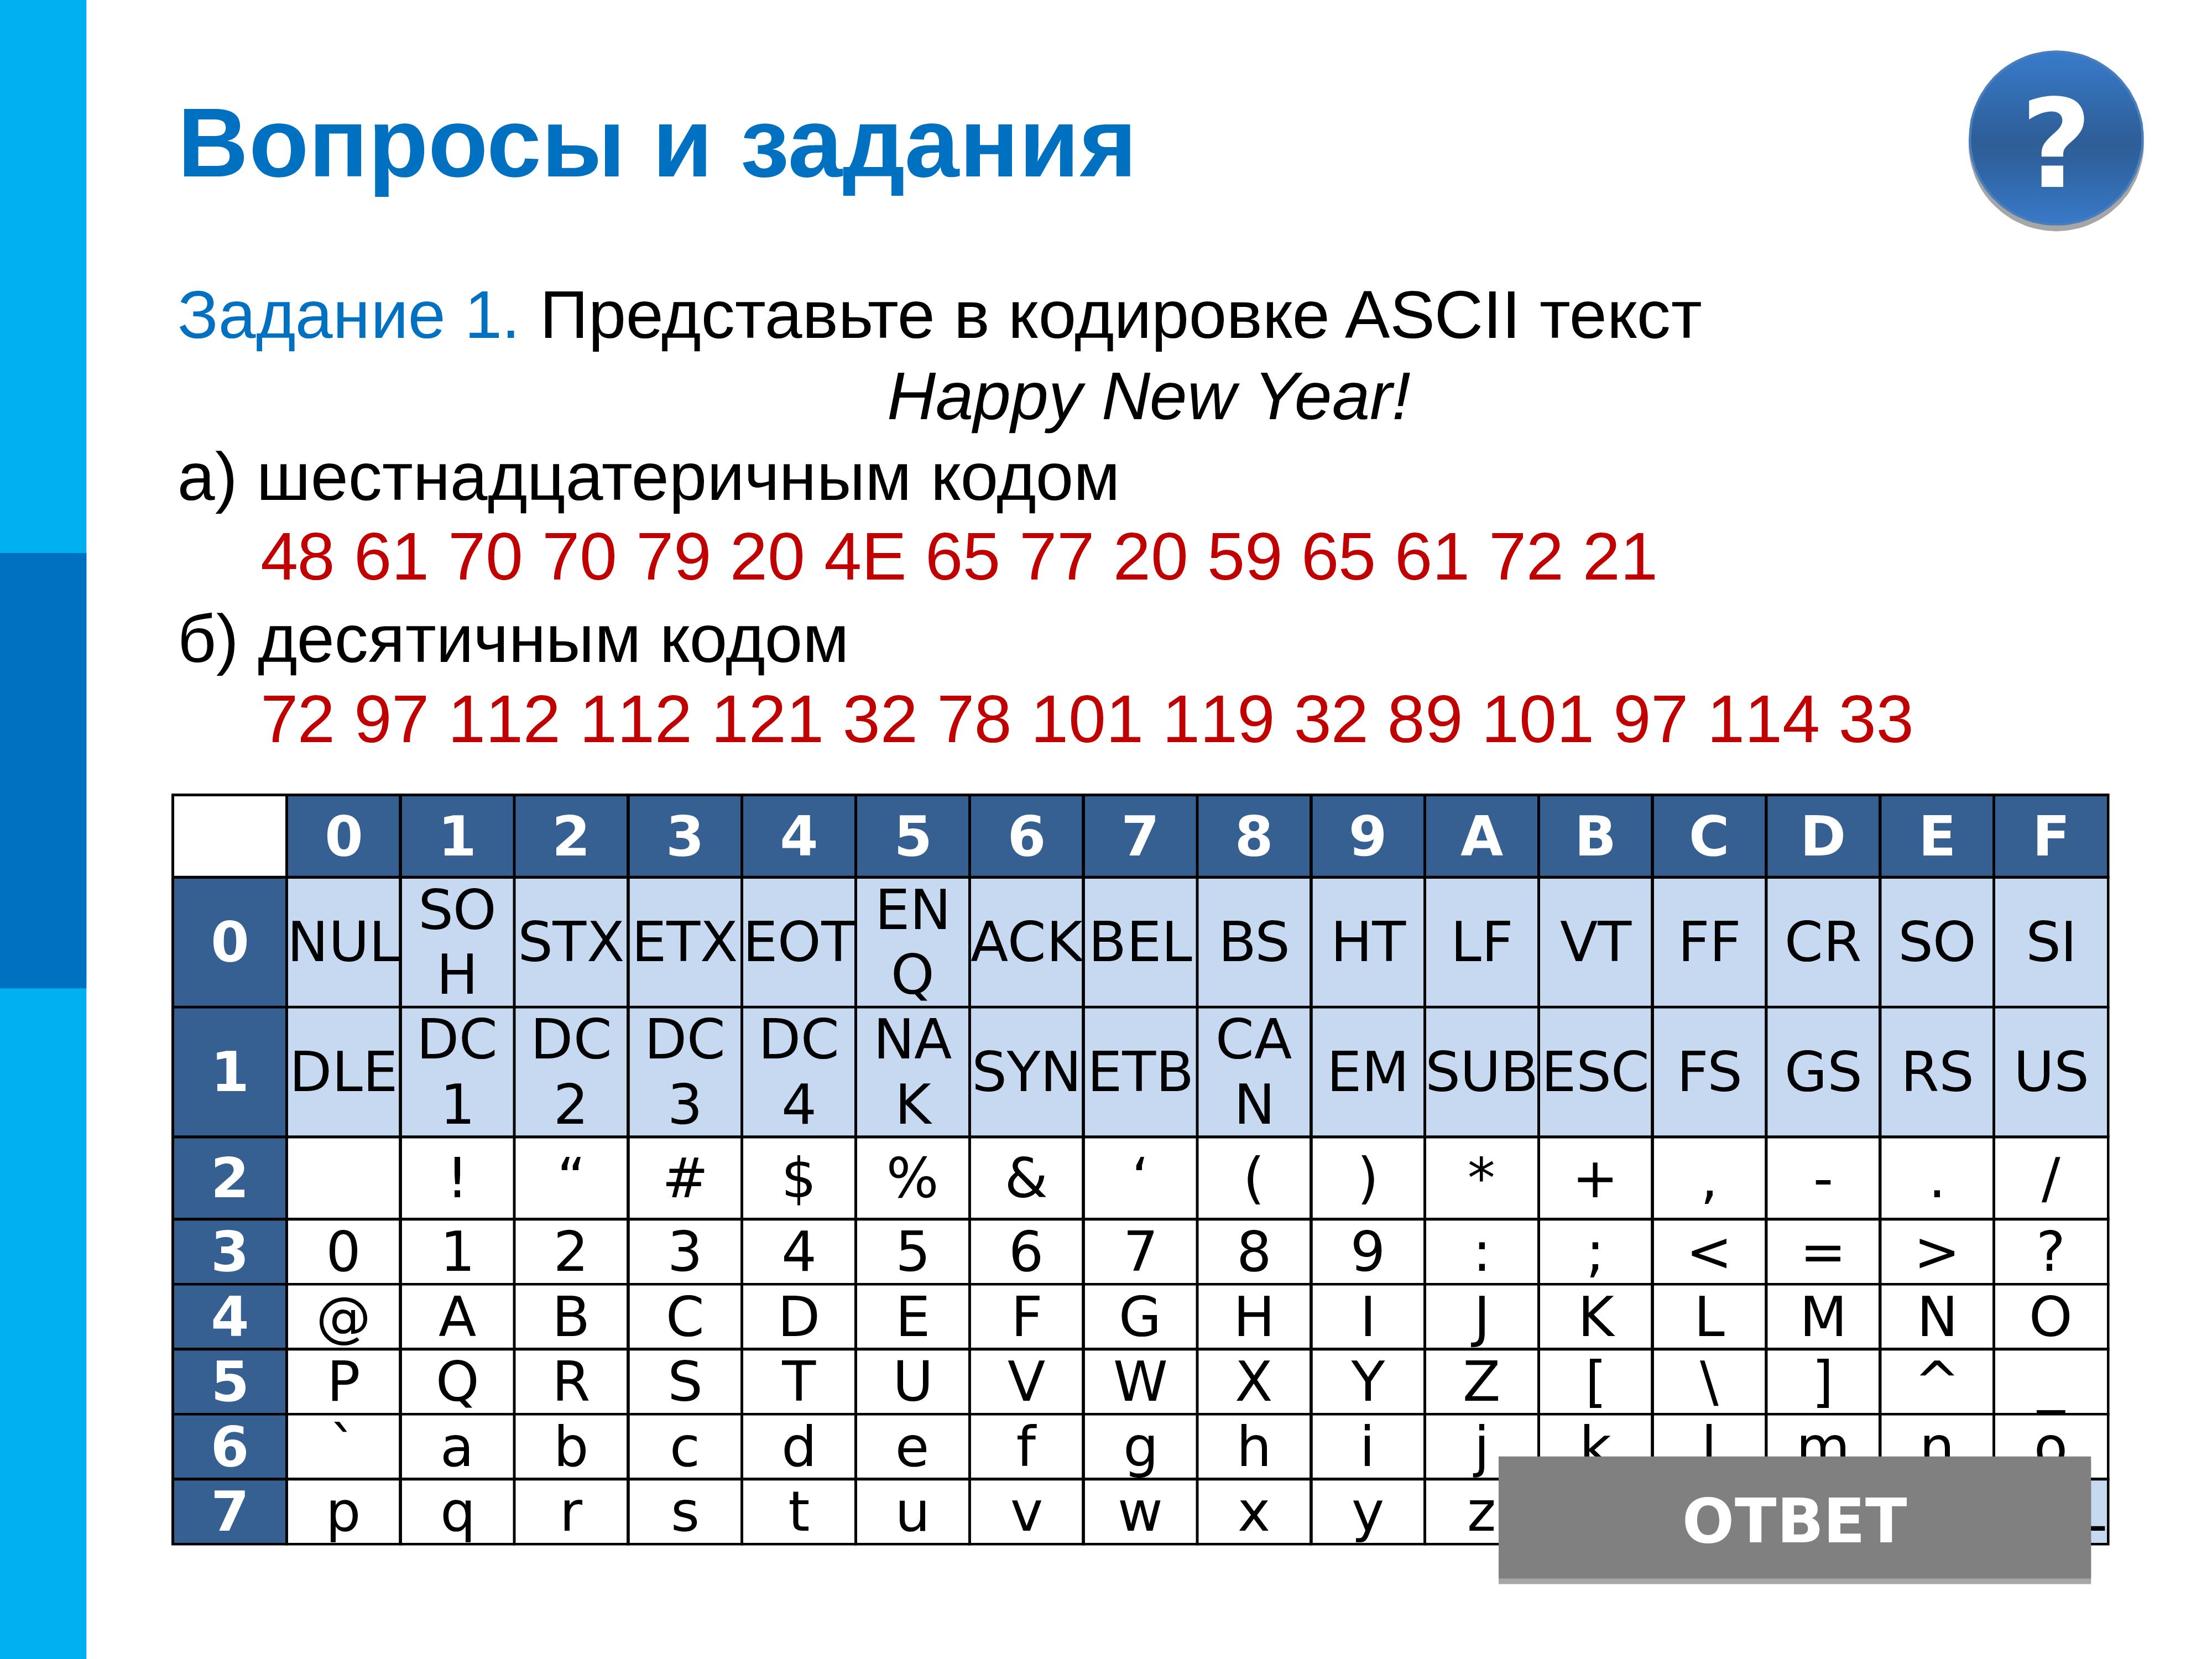 Передача представлена в кодировке unicode. Кодировка ASCII шестнадцатеричный код. Представьте в кодировке ASCII текст Happy New year. Кодирование информации в шестнадцатеричном коде. Шестнадцатеричное представление кода.